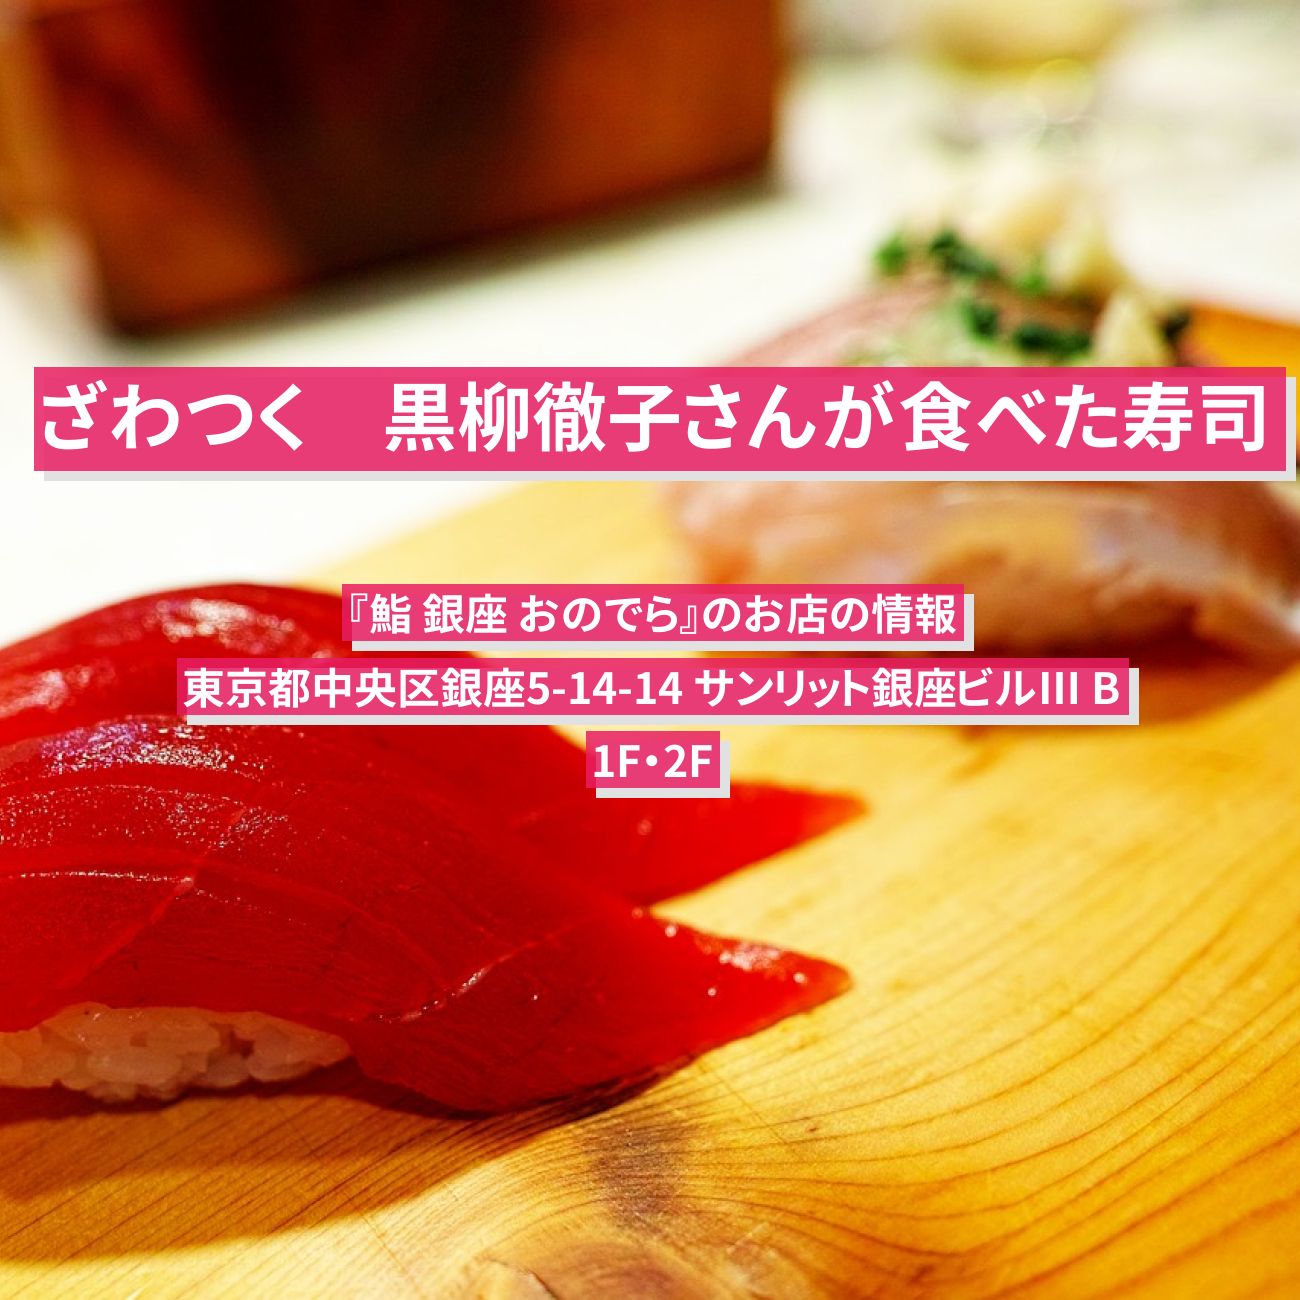 【ざわつく】寿司　黒柳徹子さんが食べた『鮨 銀座 おのでら』のお店の情報